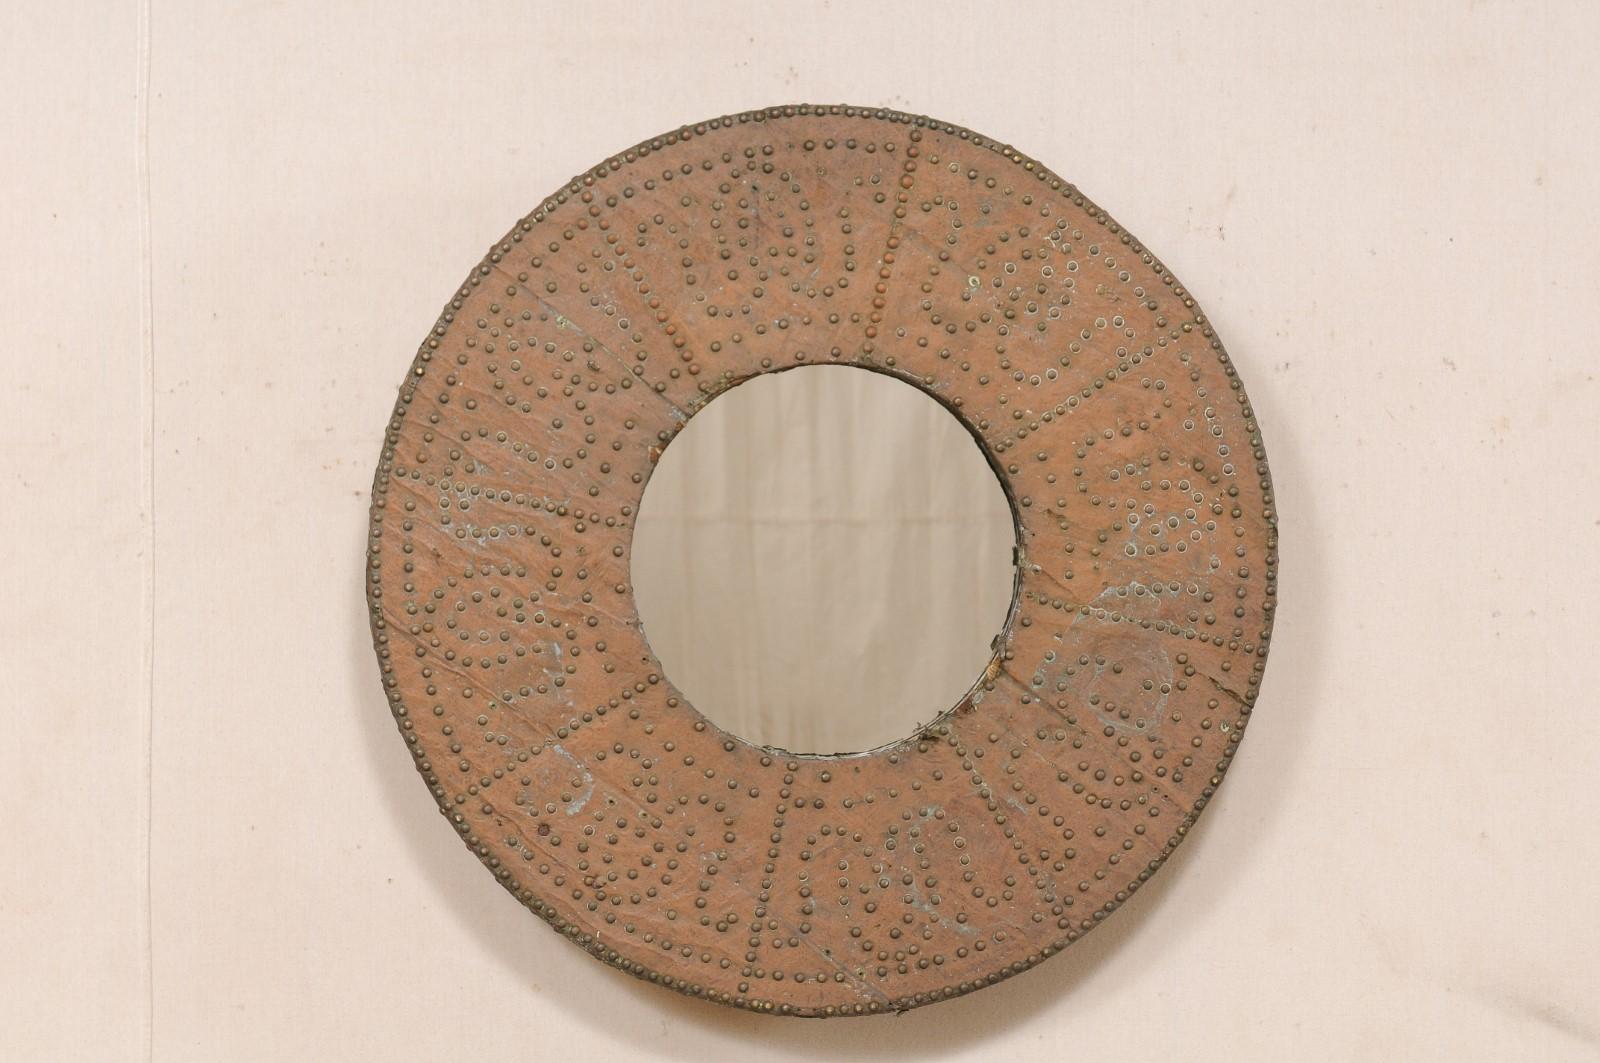 Miroir espagnol, avec entourage de brasero en cuivre, du tournant des 19e et 20e siècles. Ce miroir circulaire unique a été fabriqué sur mesure à partir d'un brasero espagnol antique, entouré d'une feuille de cuivre et magnifiquement orné d'une tête